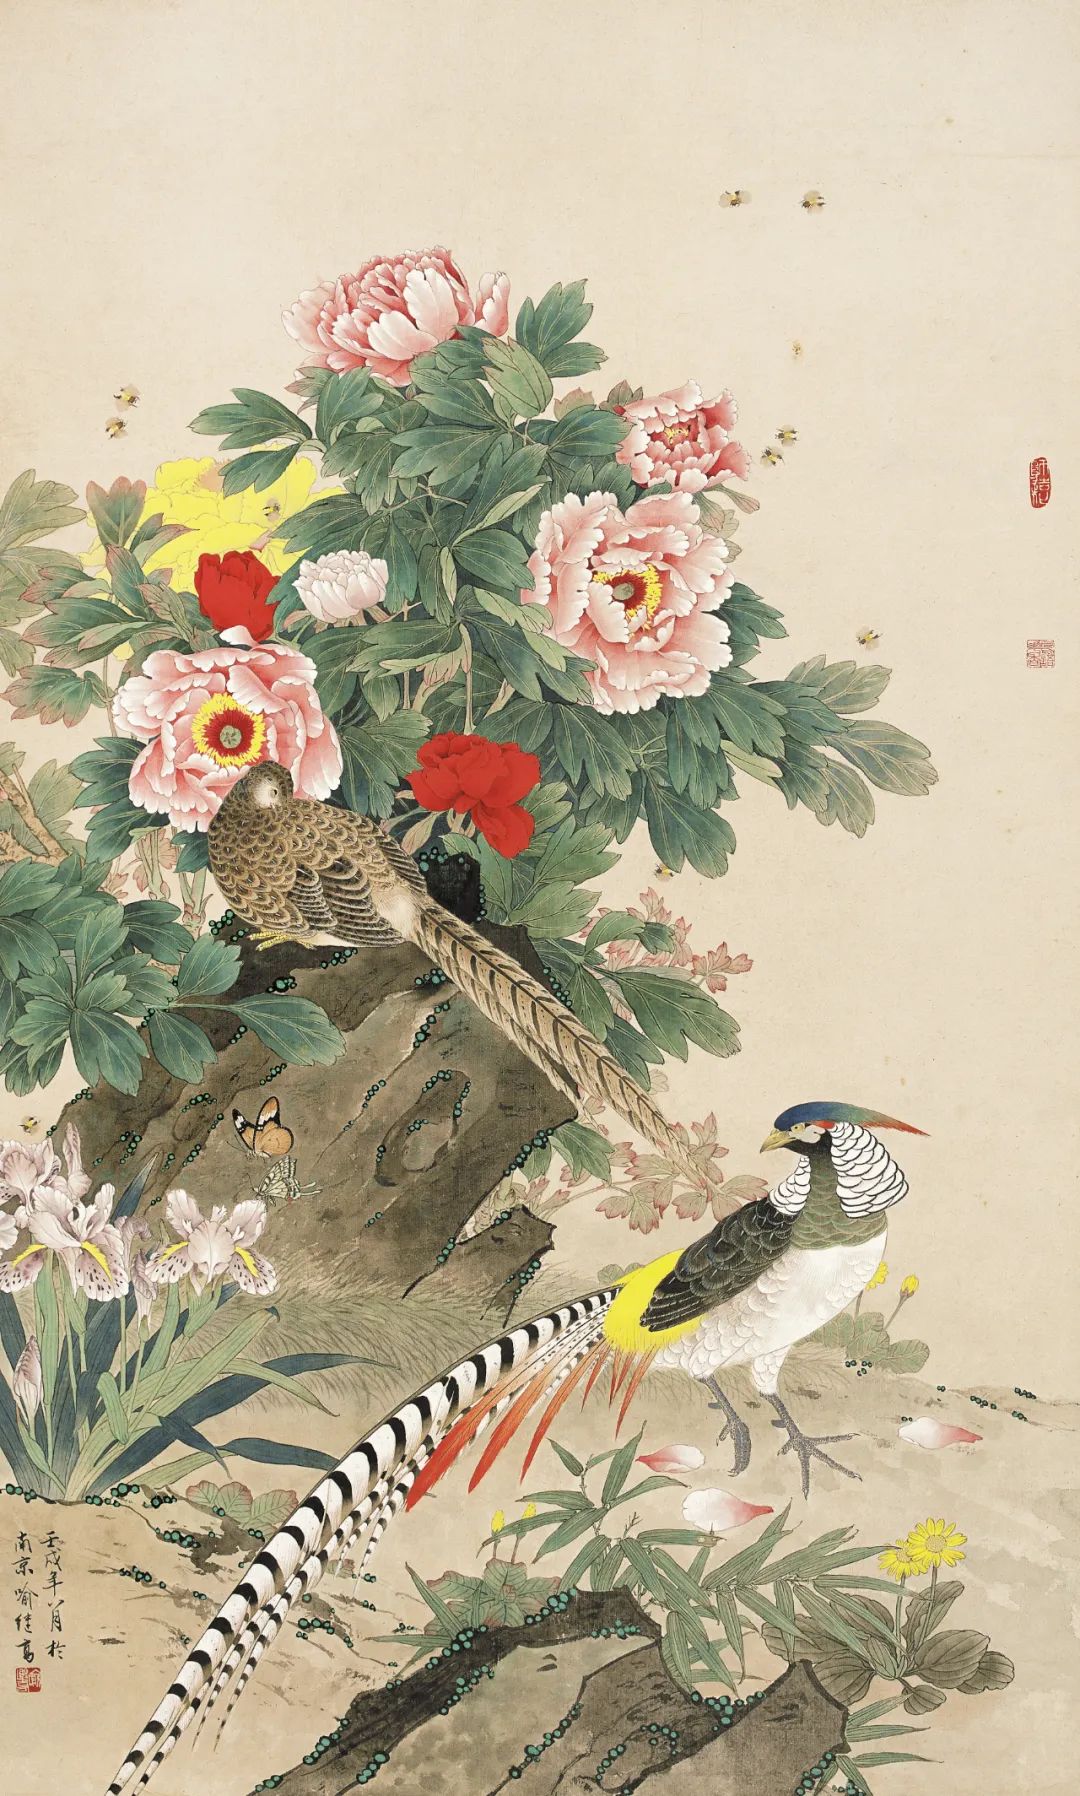 喻继高艺术成就与二十世纪中国工笔花鸟画发展学术研讨会_长三角美术家网